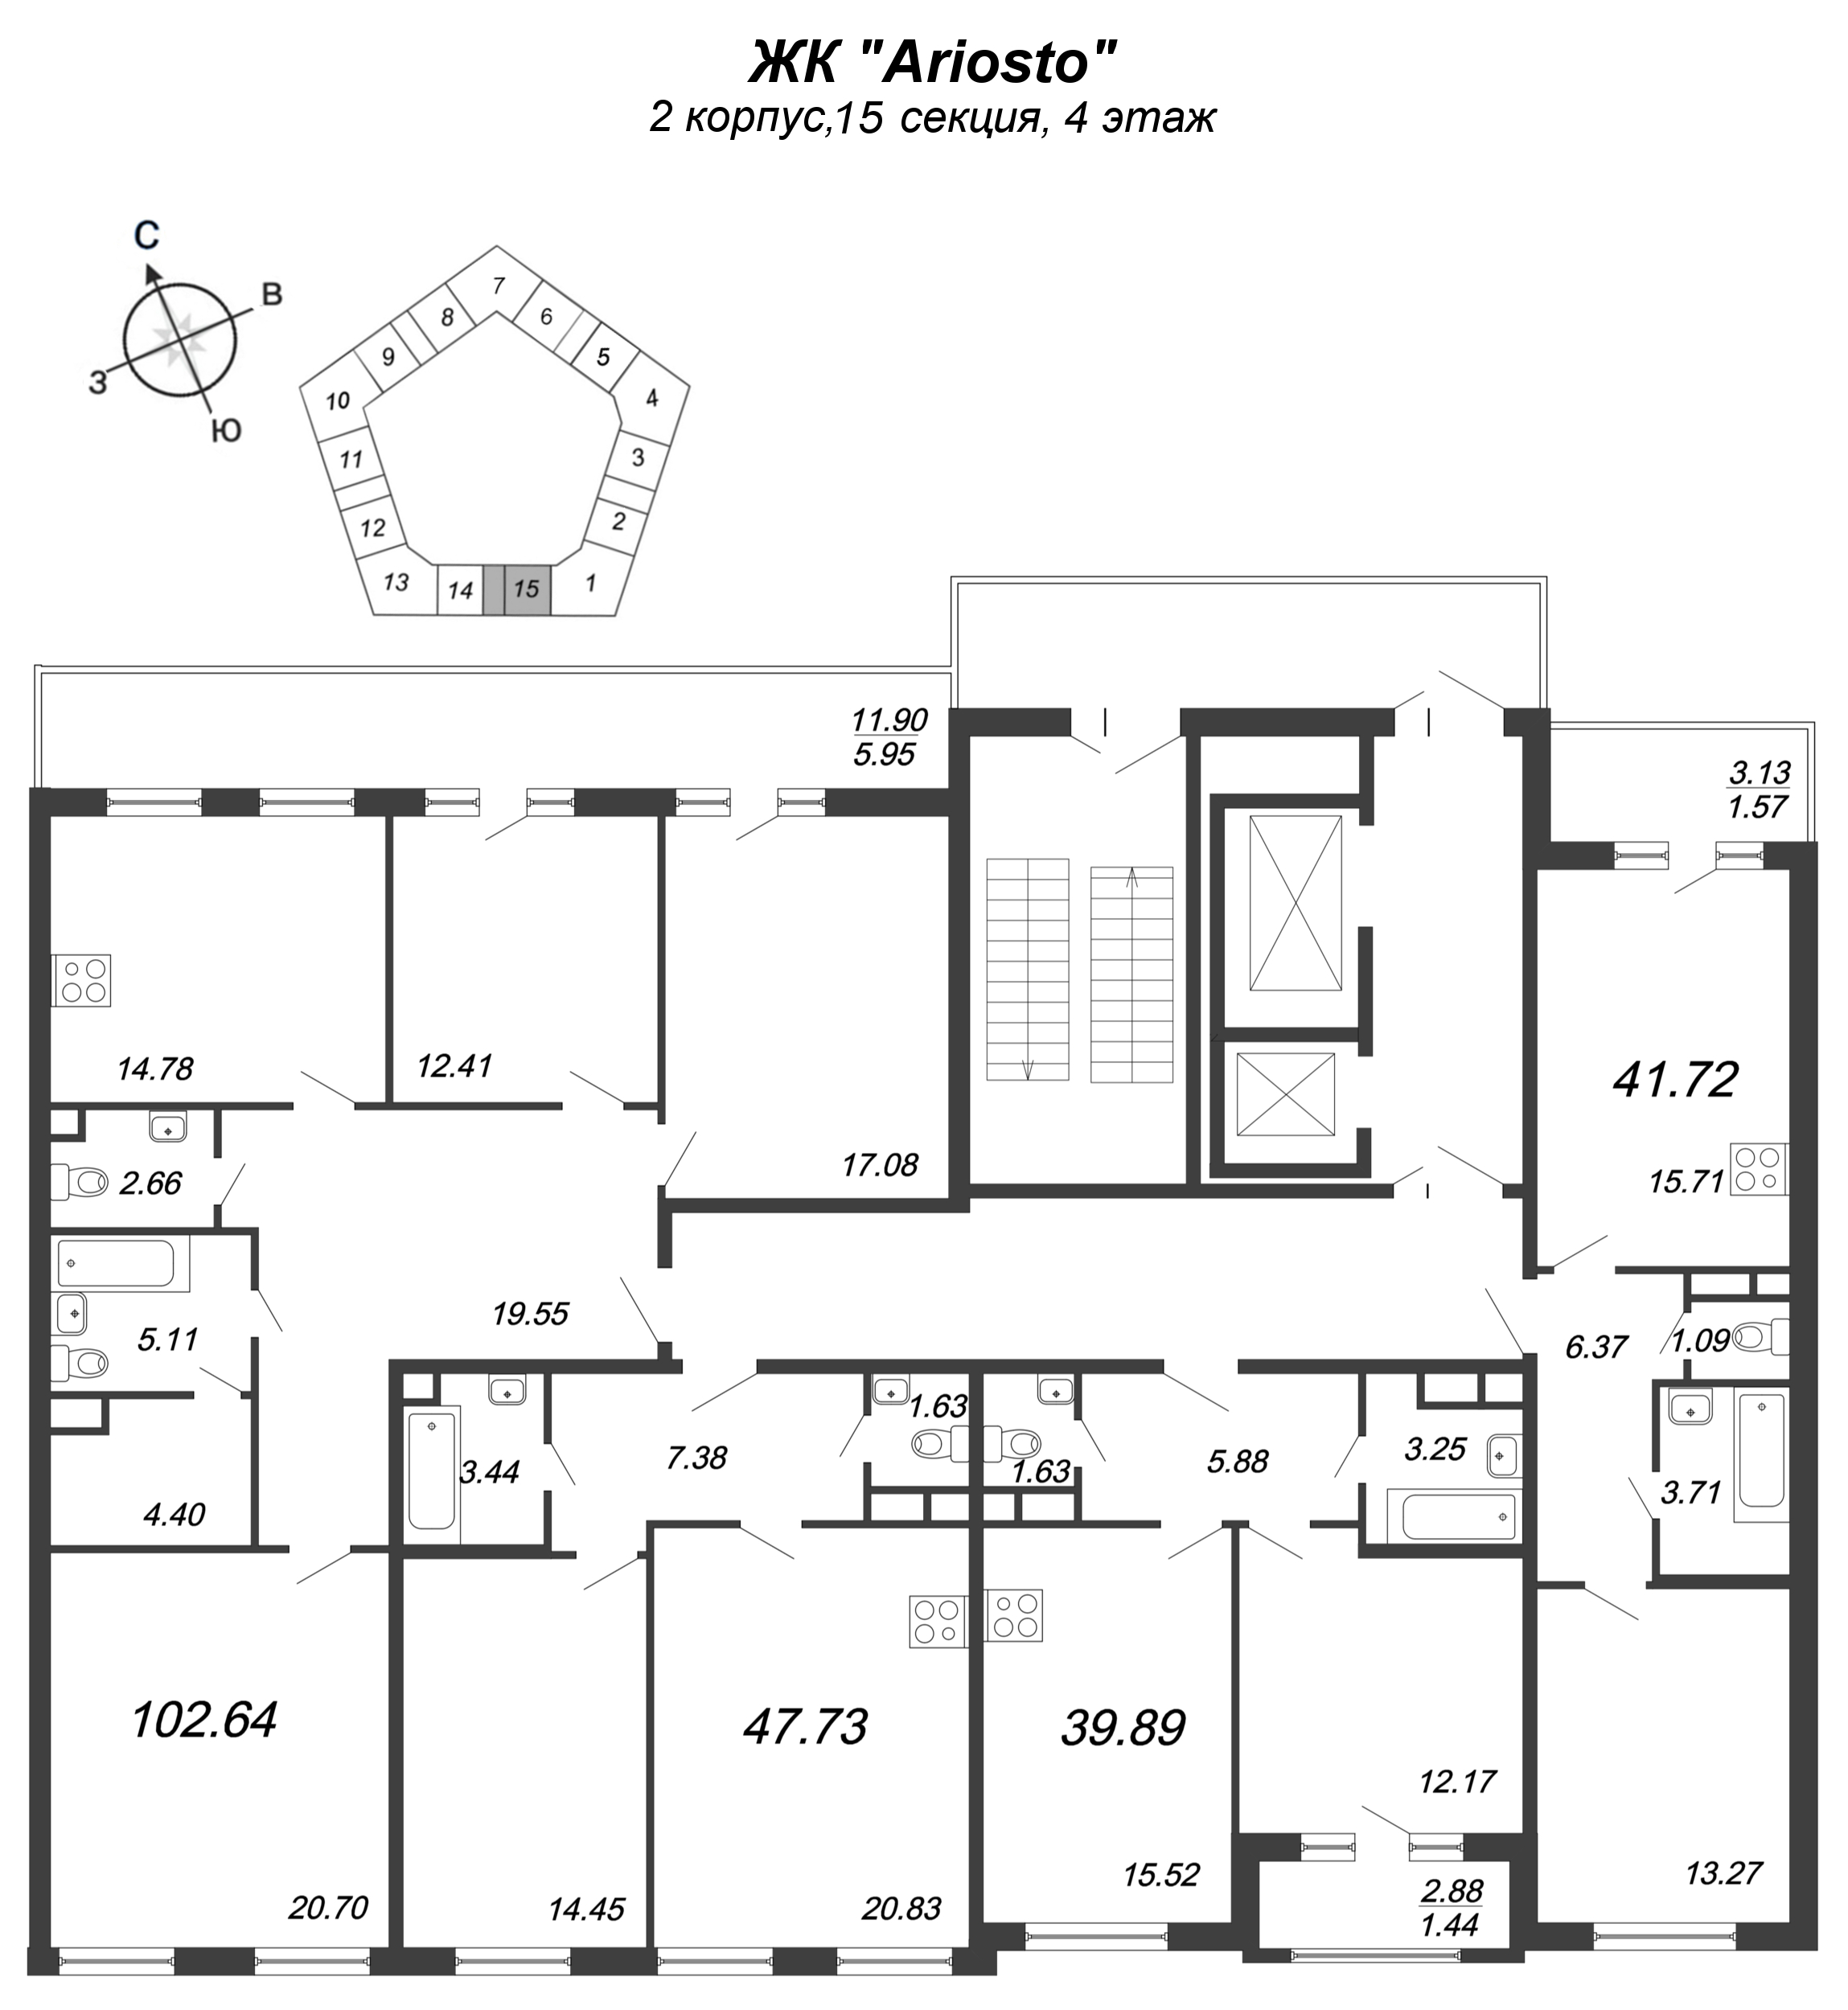 3-комнатная квартира, 102.64 м² в ЖК "Ariosto" - планировка этажа